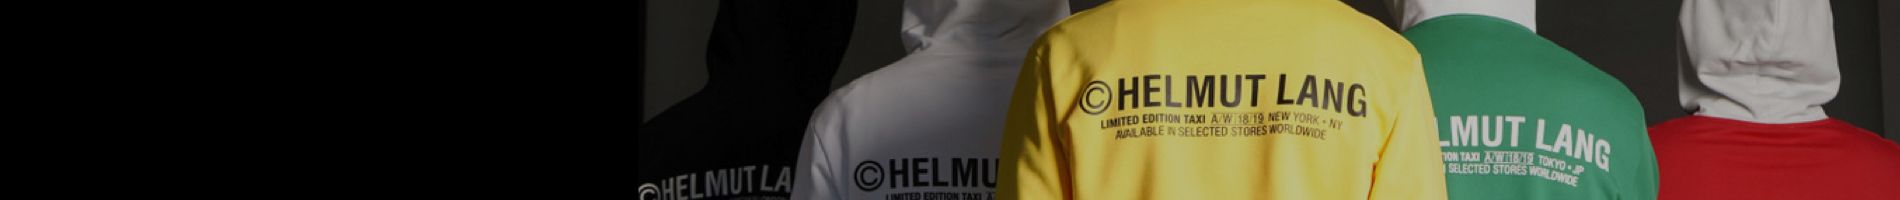 Helmut Lang Men's Shirts (Button Ups) Banner